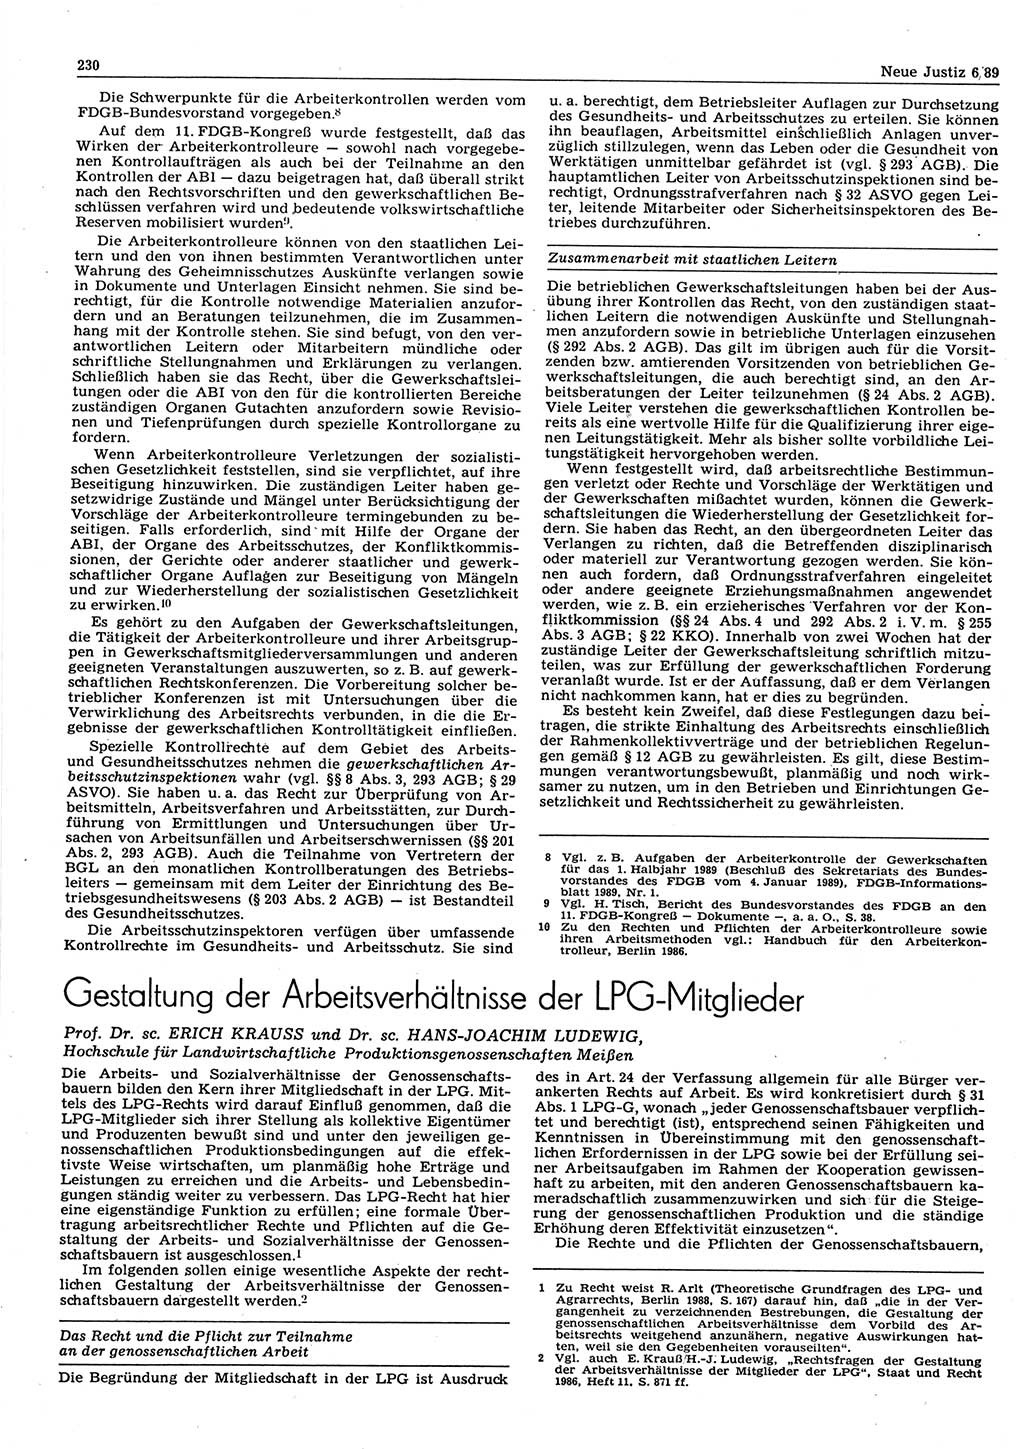 Neue Justiz (NJ), Zeitschrift für sozialistisches Recht und Gesetzlichkeit [Deutsche Demokratische Republik (DDR)], 43. Jahrgang 1989, Seite 230 (NJ DDR 1989, S. 230)